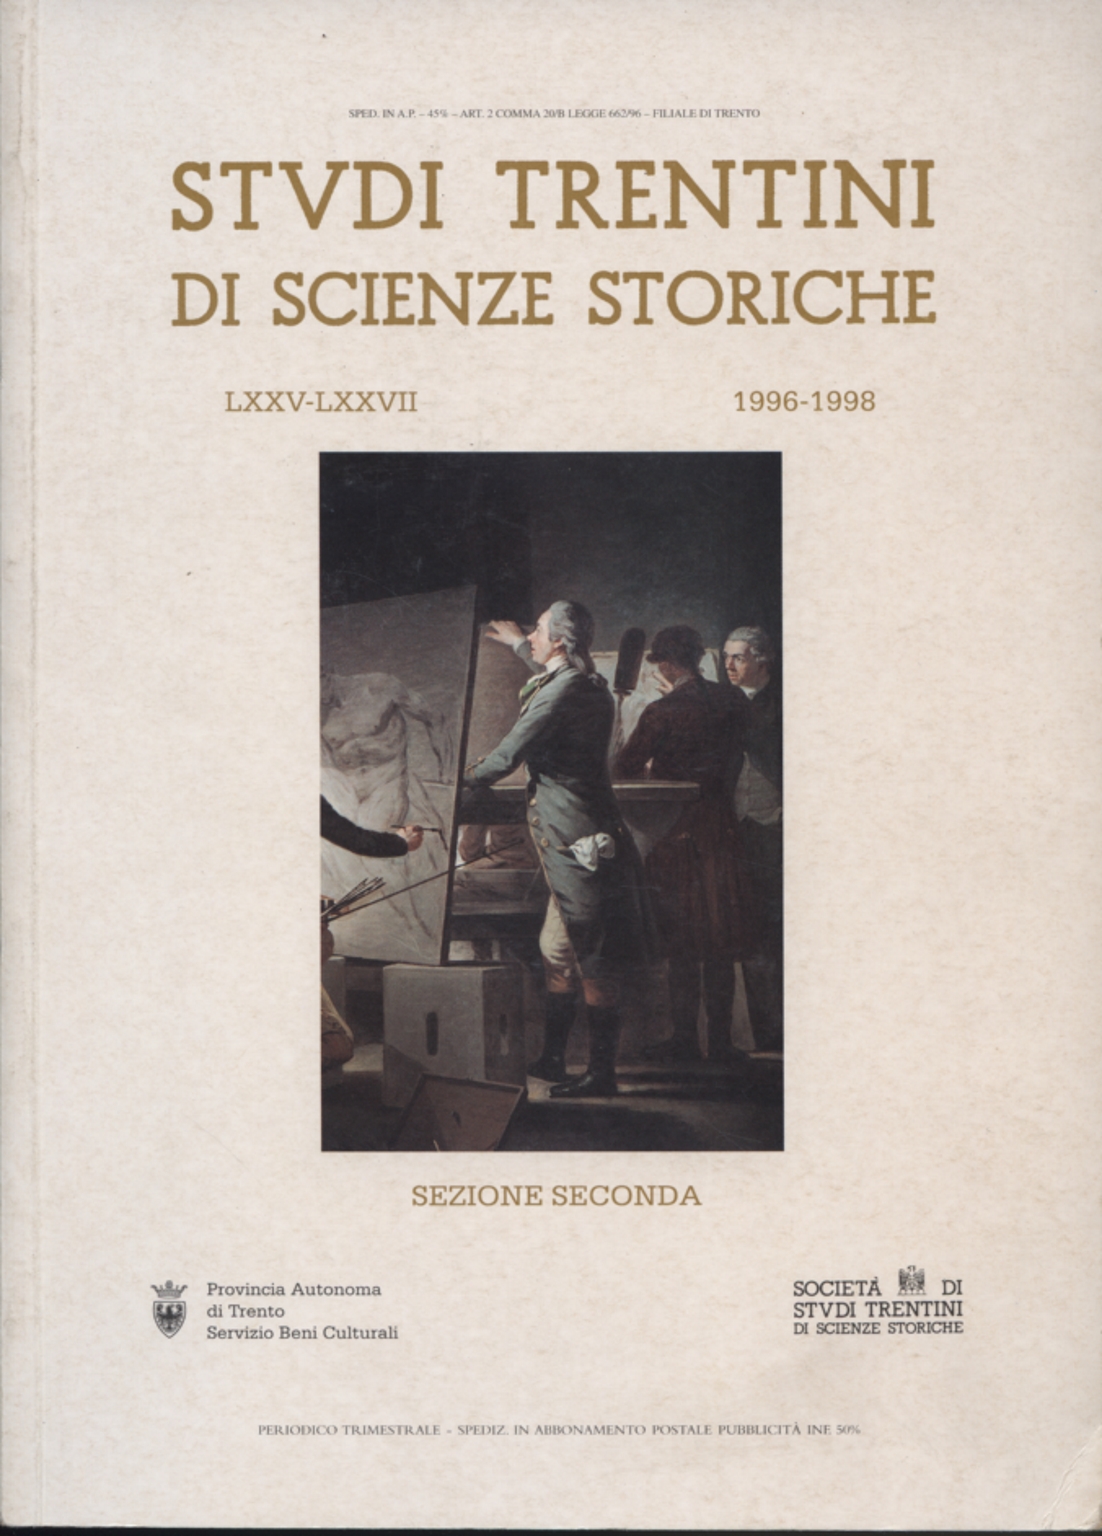 Studi trentini di scienze storiche Sezione seconda, AA.VV.